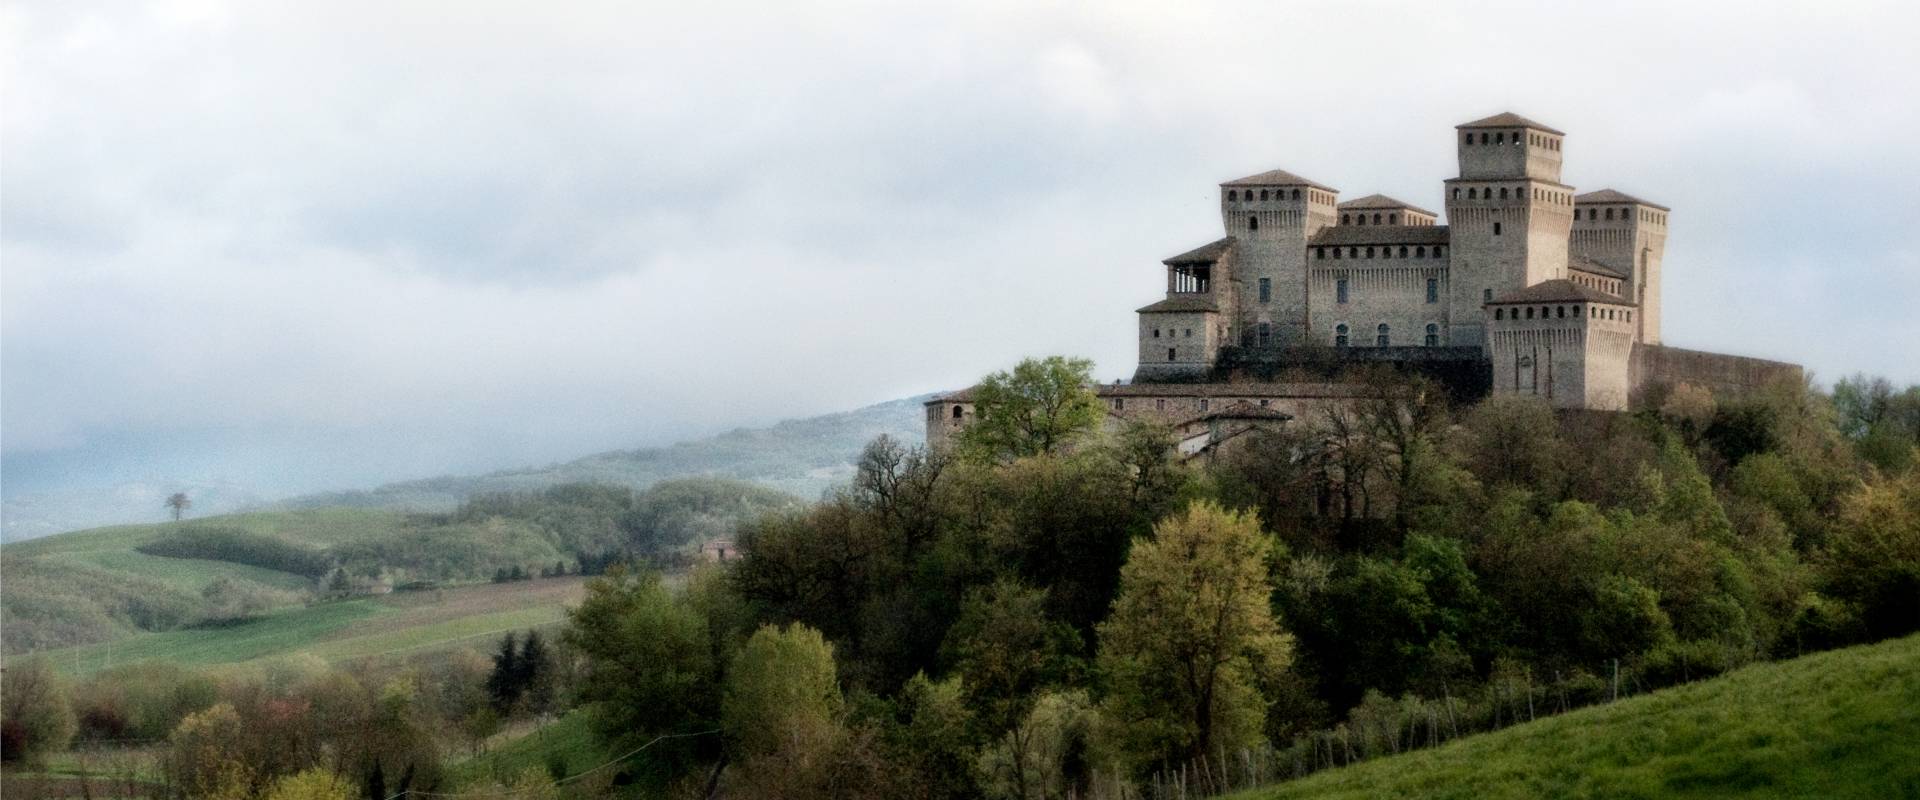 Castello di Torrechiara (Provincia di Parma) foto di Gianni Pezzani